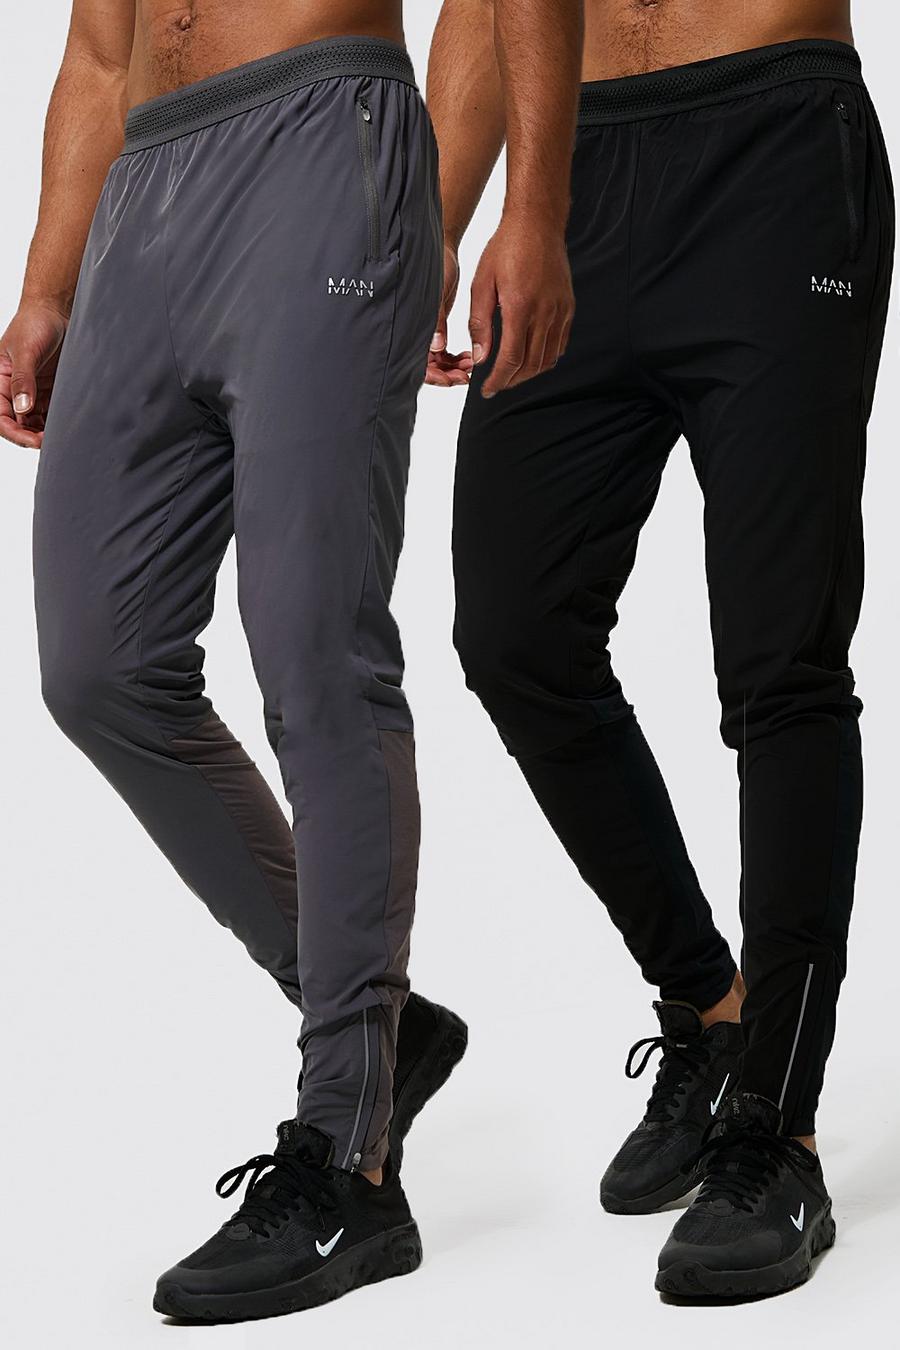 שחור מארז 2 זוגות מכנסי ריצה ספורטיביים קלילים לחדר הכושר Man, לגברים גבוהים